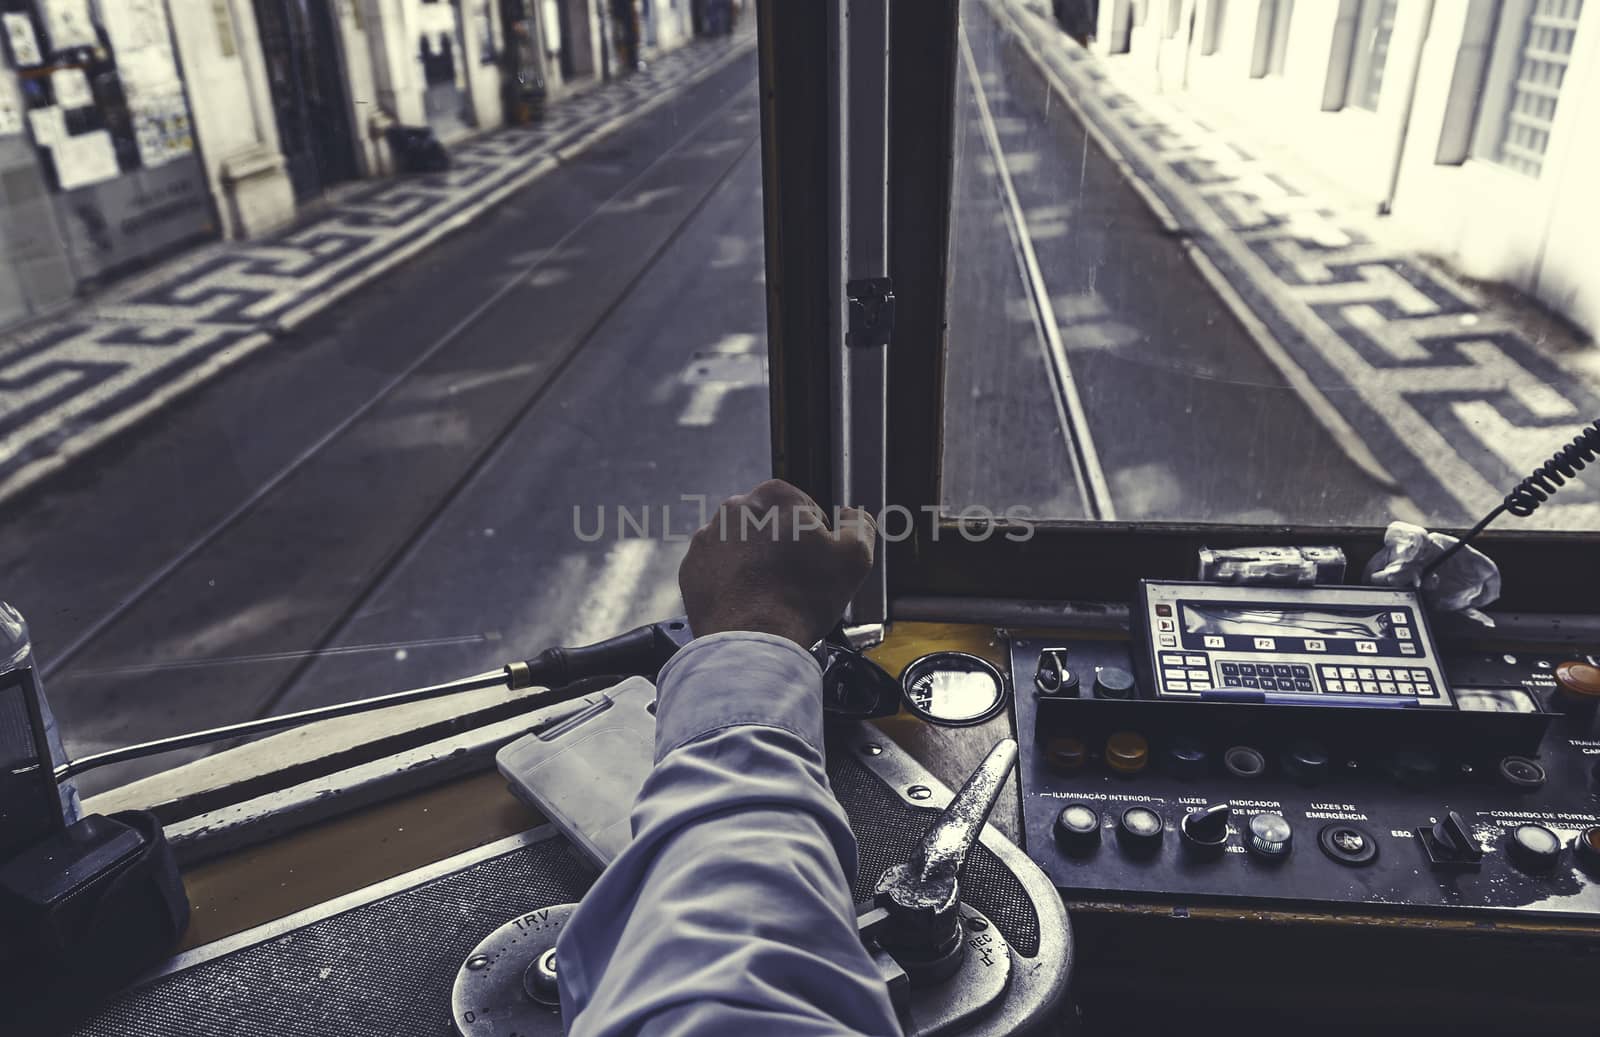 Driver tram in Lisbon by esebene